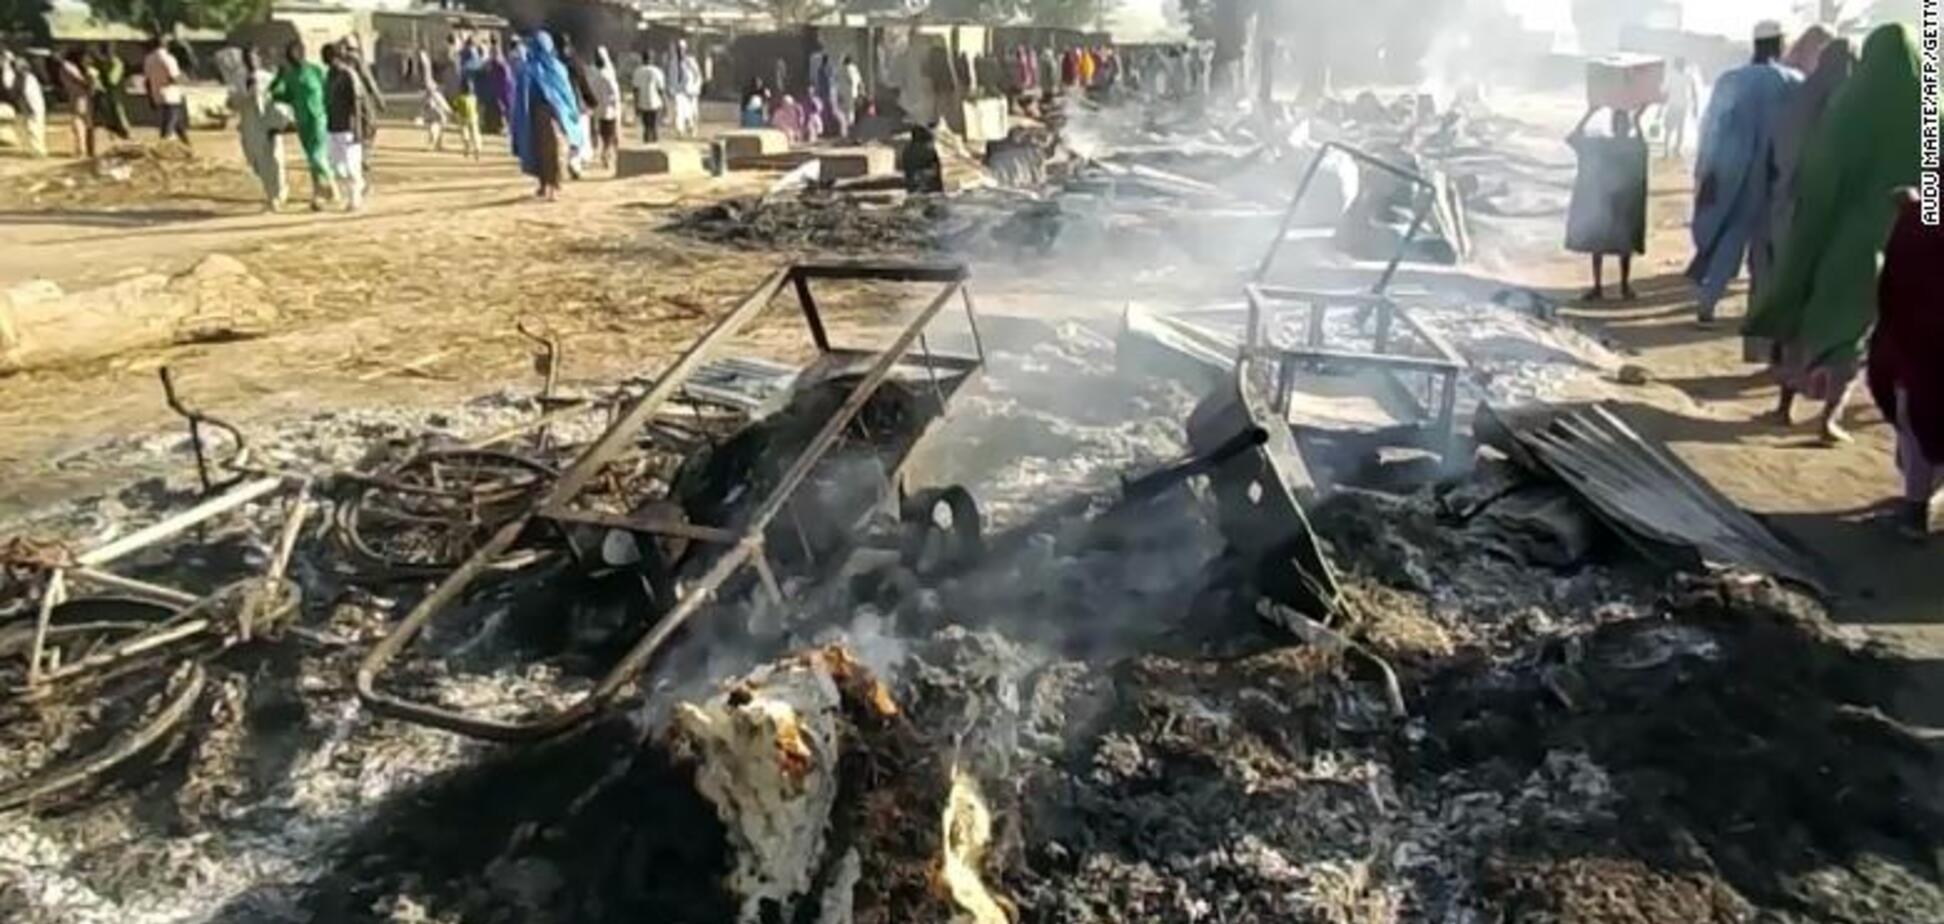 Атаковали на похоронах: в Нигерии 'Боко харам' убили 65 человек